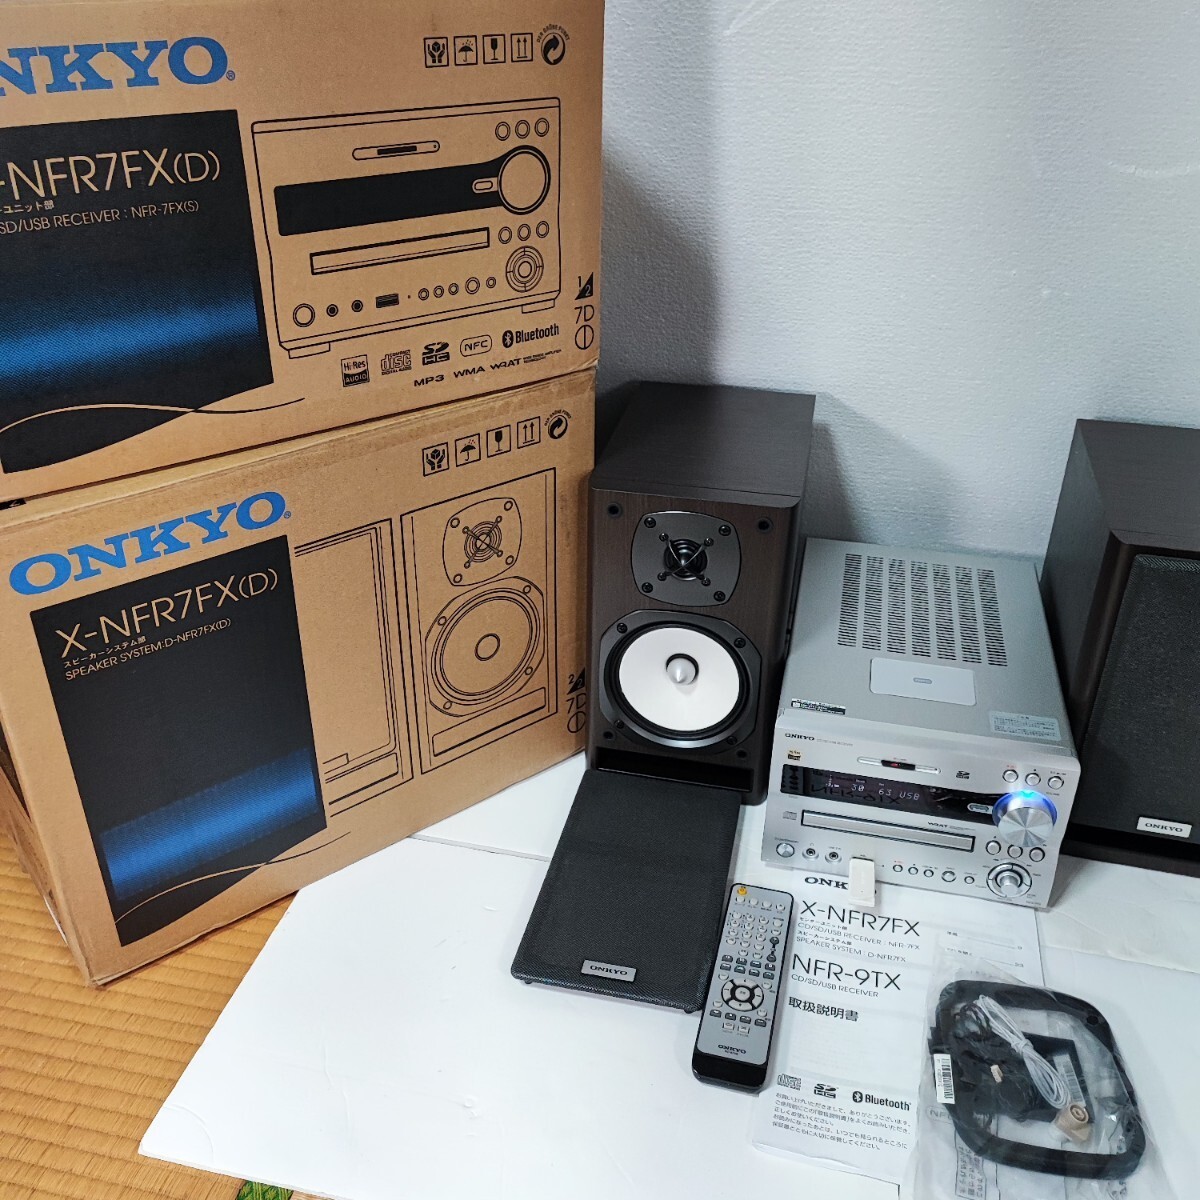 〓新品に近い〓　ONKYO X-NFR7FX(D) CD/SD/USBレシーバーシステム、ハイレゾ対応、2019年製の超美品商品★元箱入り_画像4